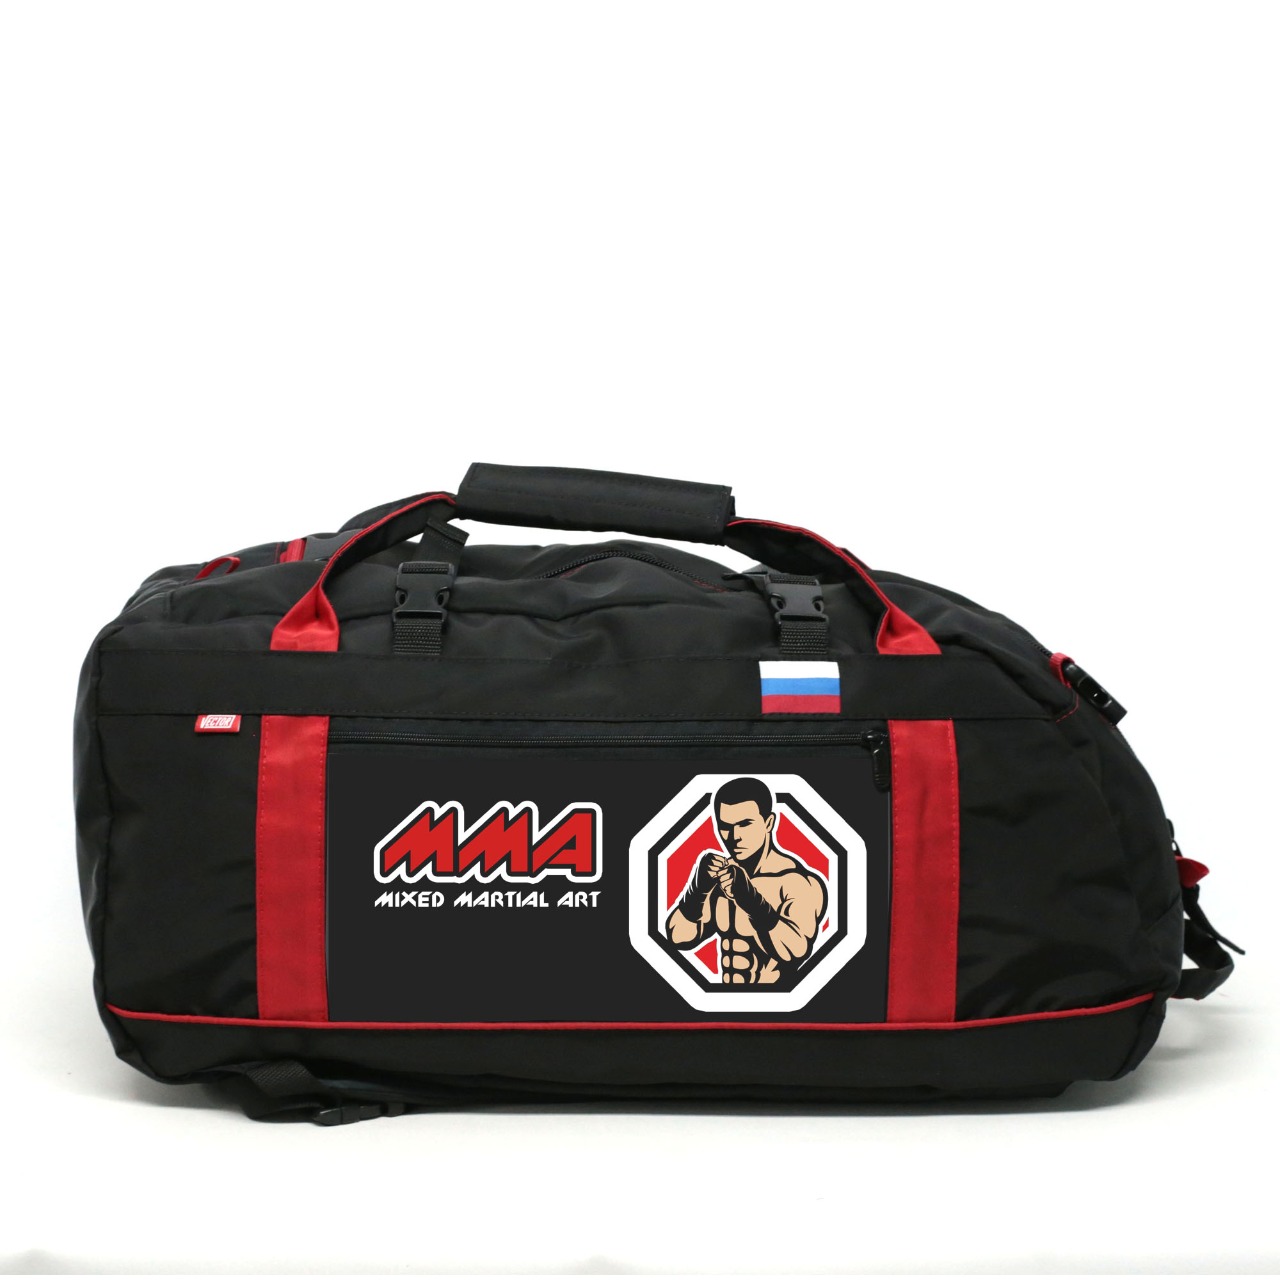 Спортивная сумка Спорт Сибирь ММА смешанные единоборства 45 литров черная